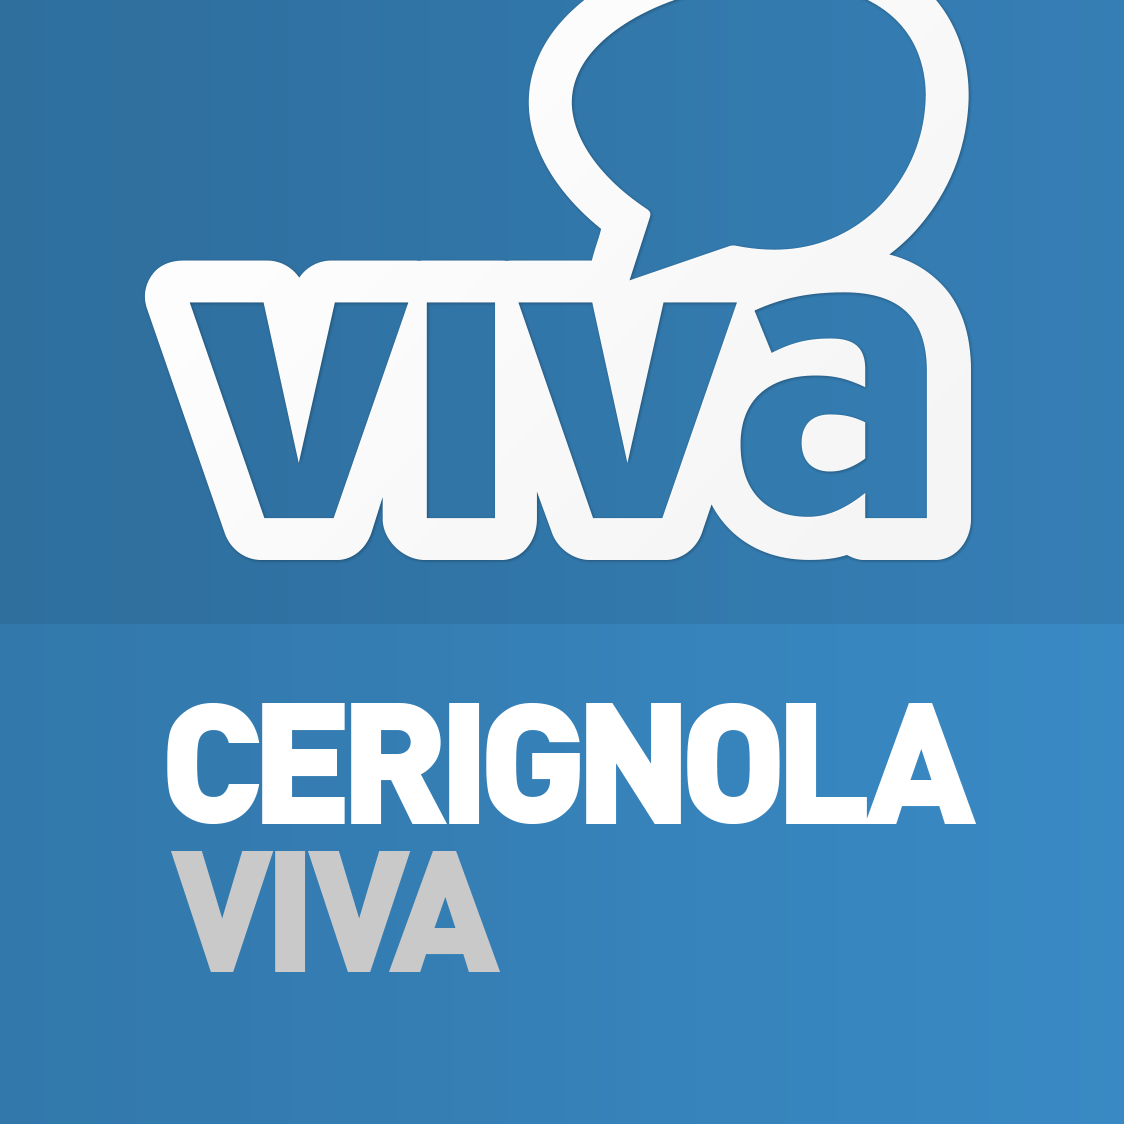 CerignolaViva